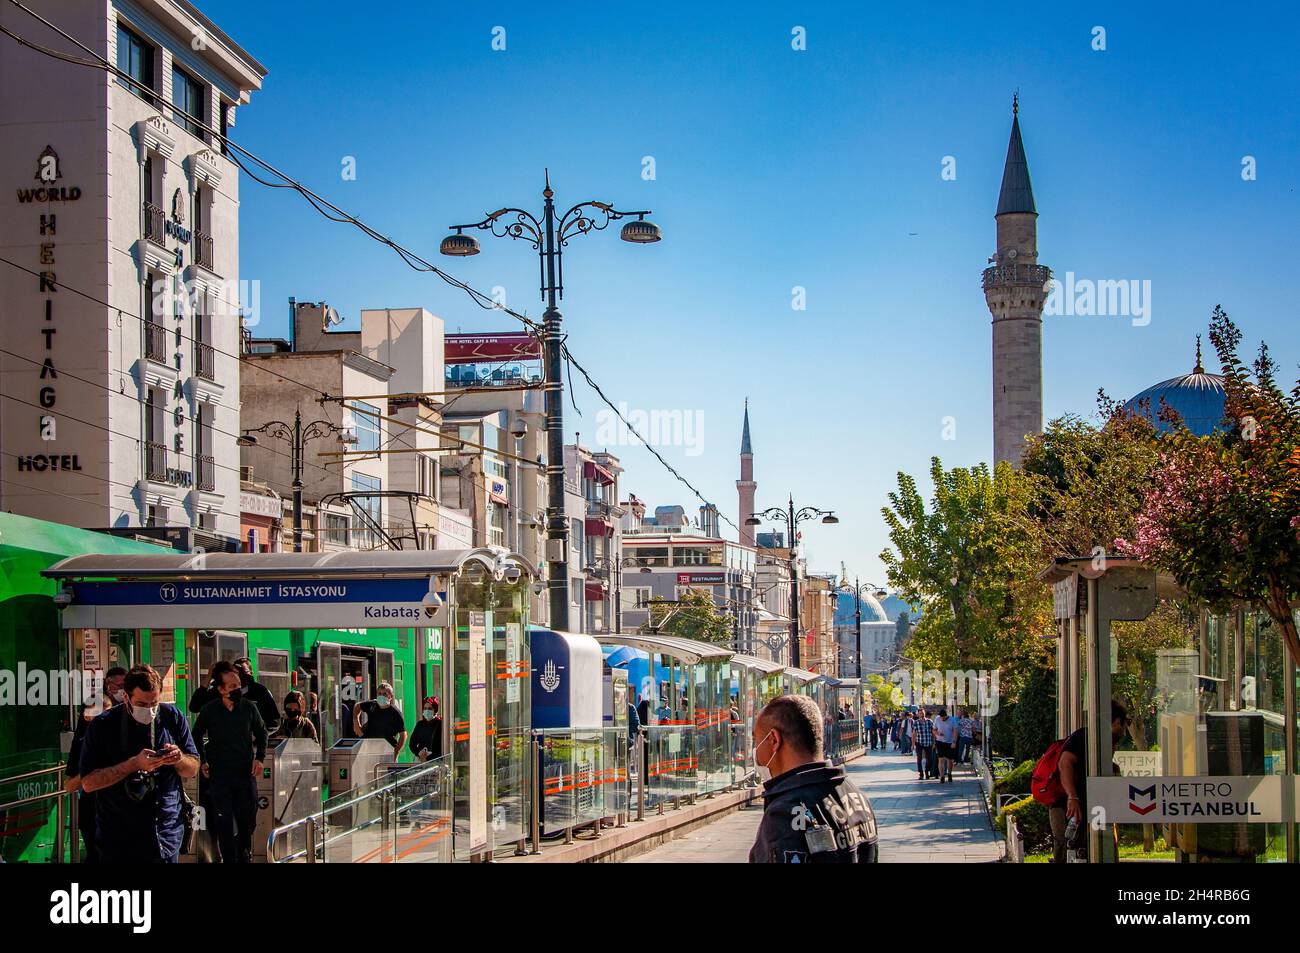 ISTANBUL, TURQUIE.26 SEPTEMBRE 2021.Vue sur la rue de la ville, petits magasins et cafés, tour de la mosquée en arrière-plan, lumière du jour Banque D'Images